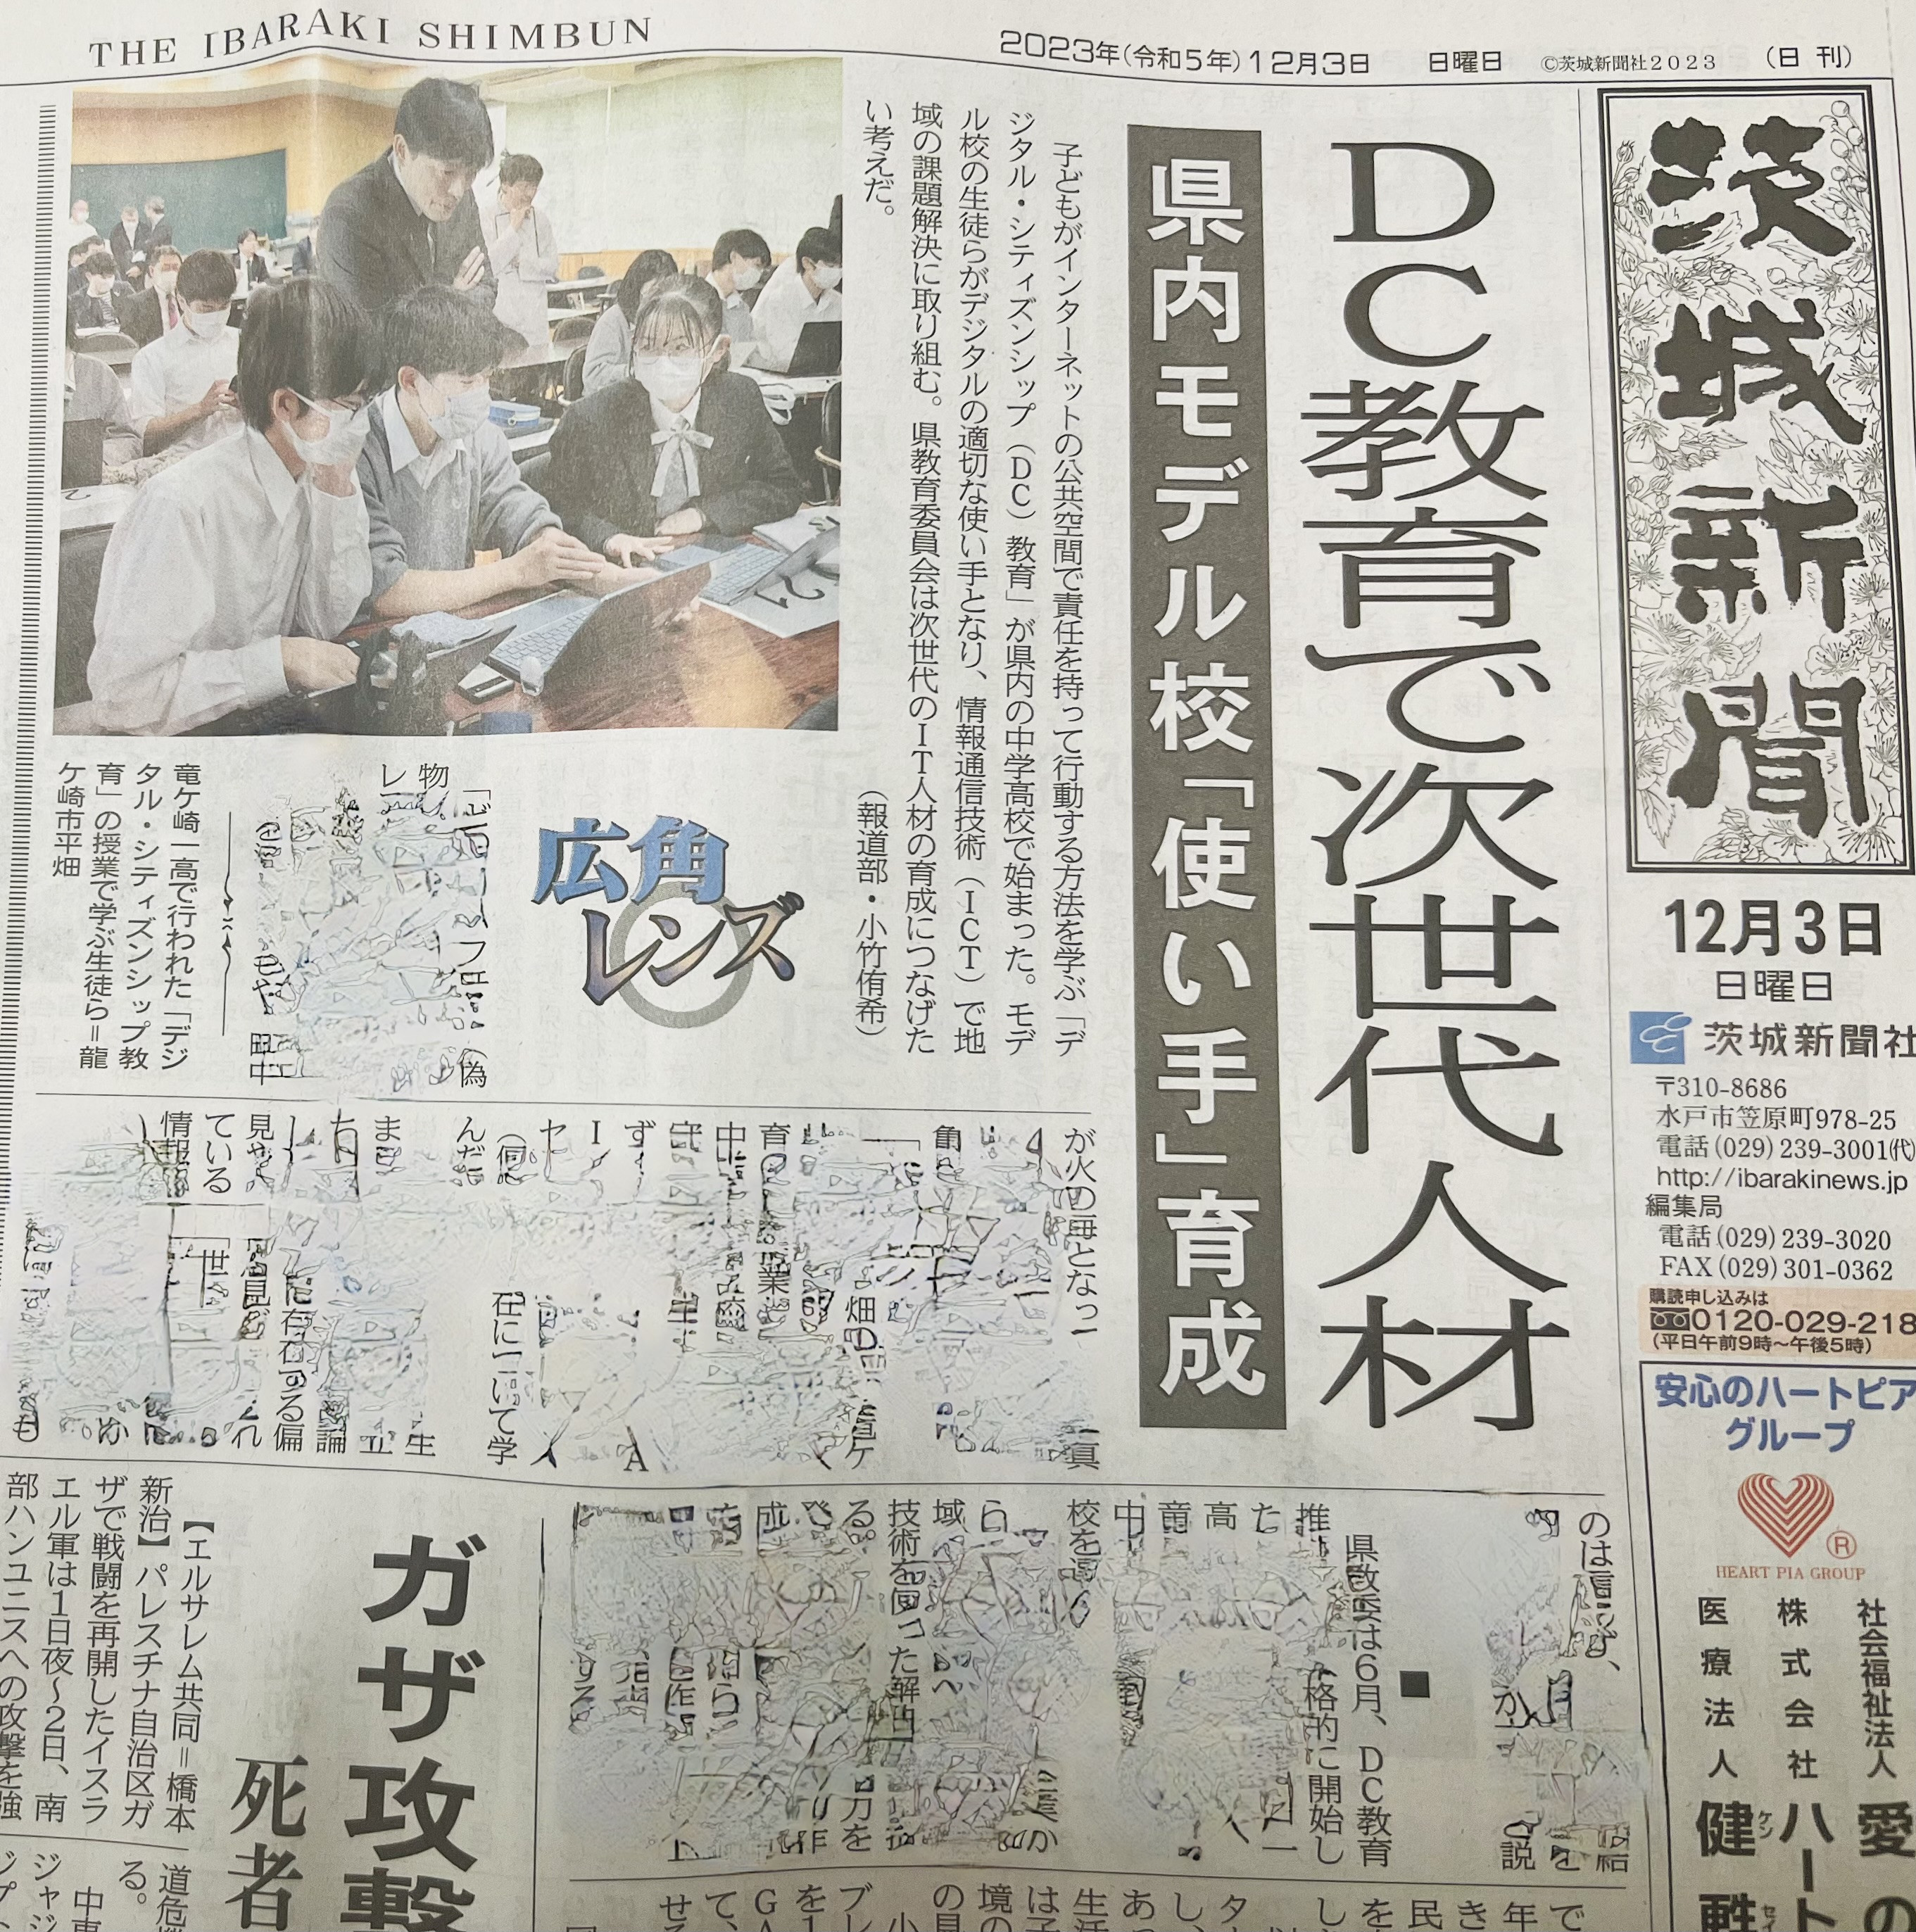 茨城県での実践が茨城新聞に大きく掲載されました